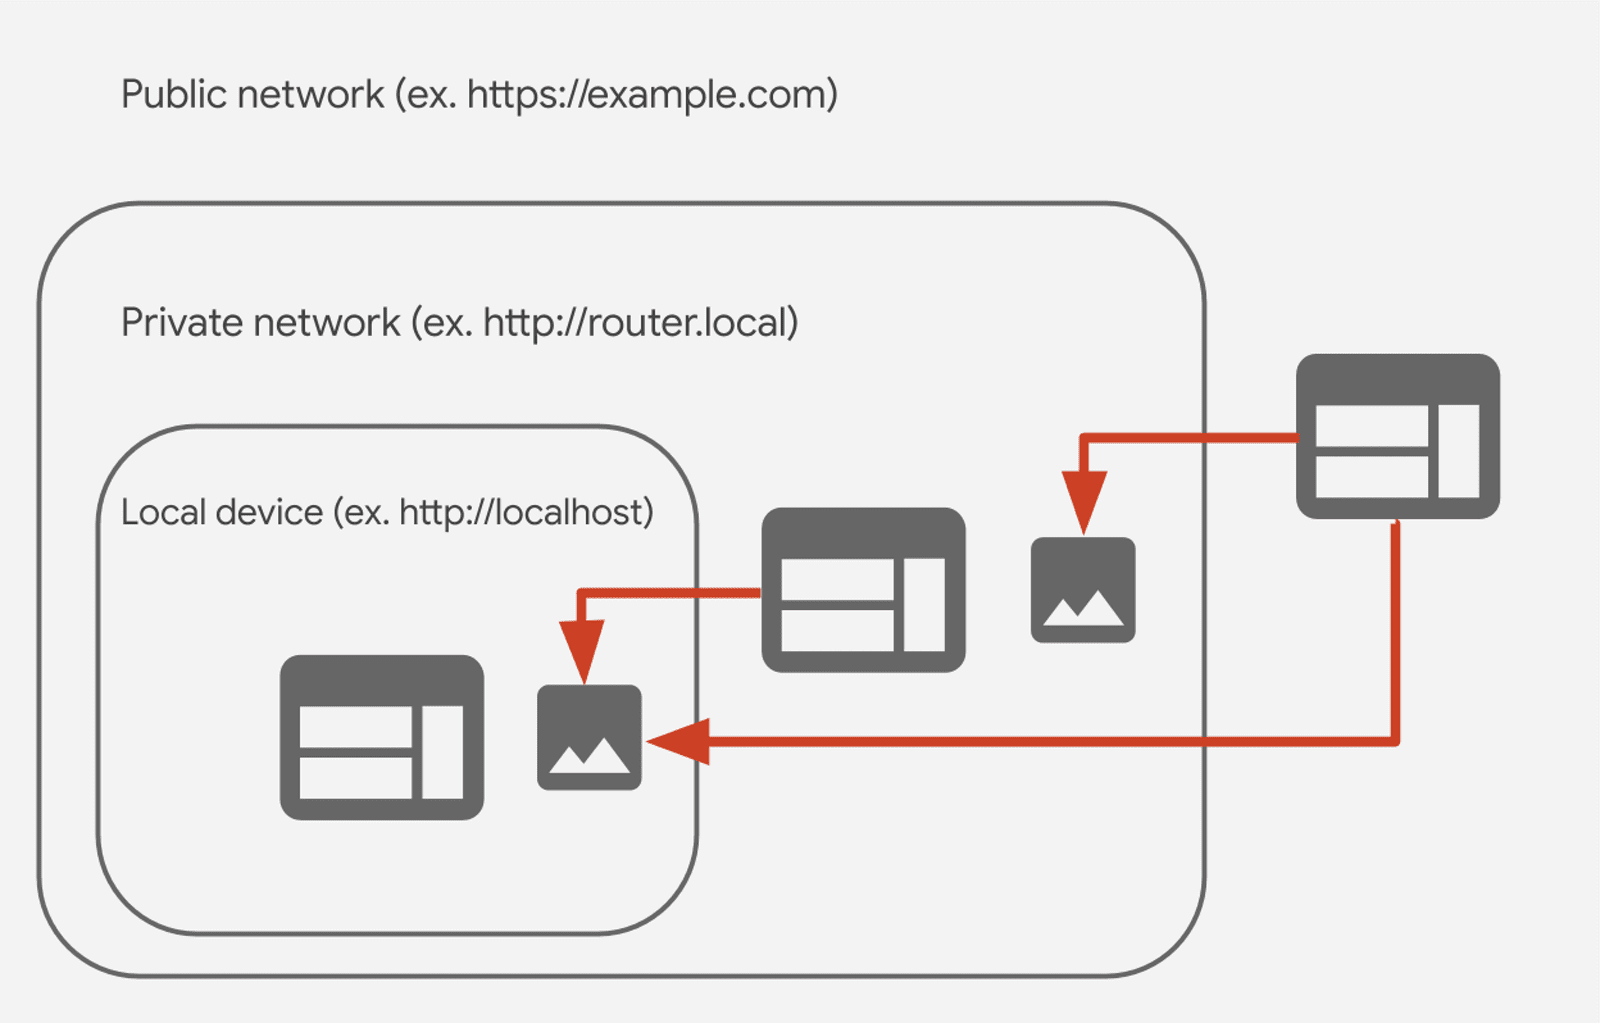 הקשר בין רשתות ציבוריות, פרטיות ומקומיות בגישה לרשת פרטית (CORS-RFC1918). 